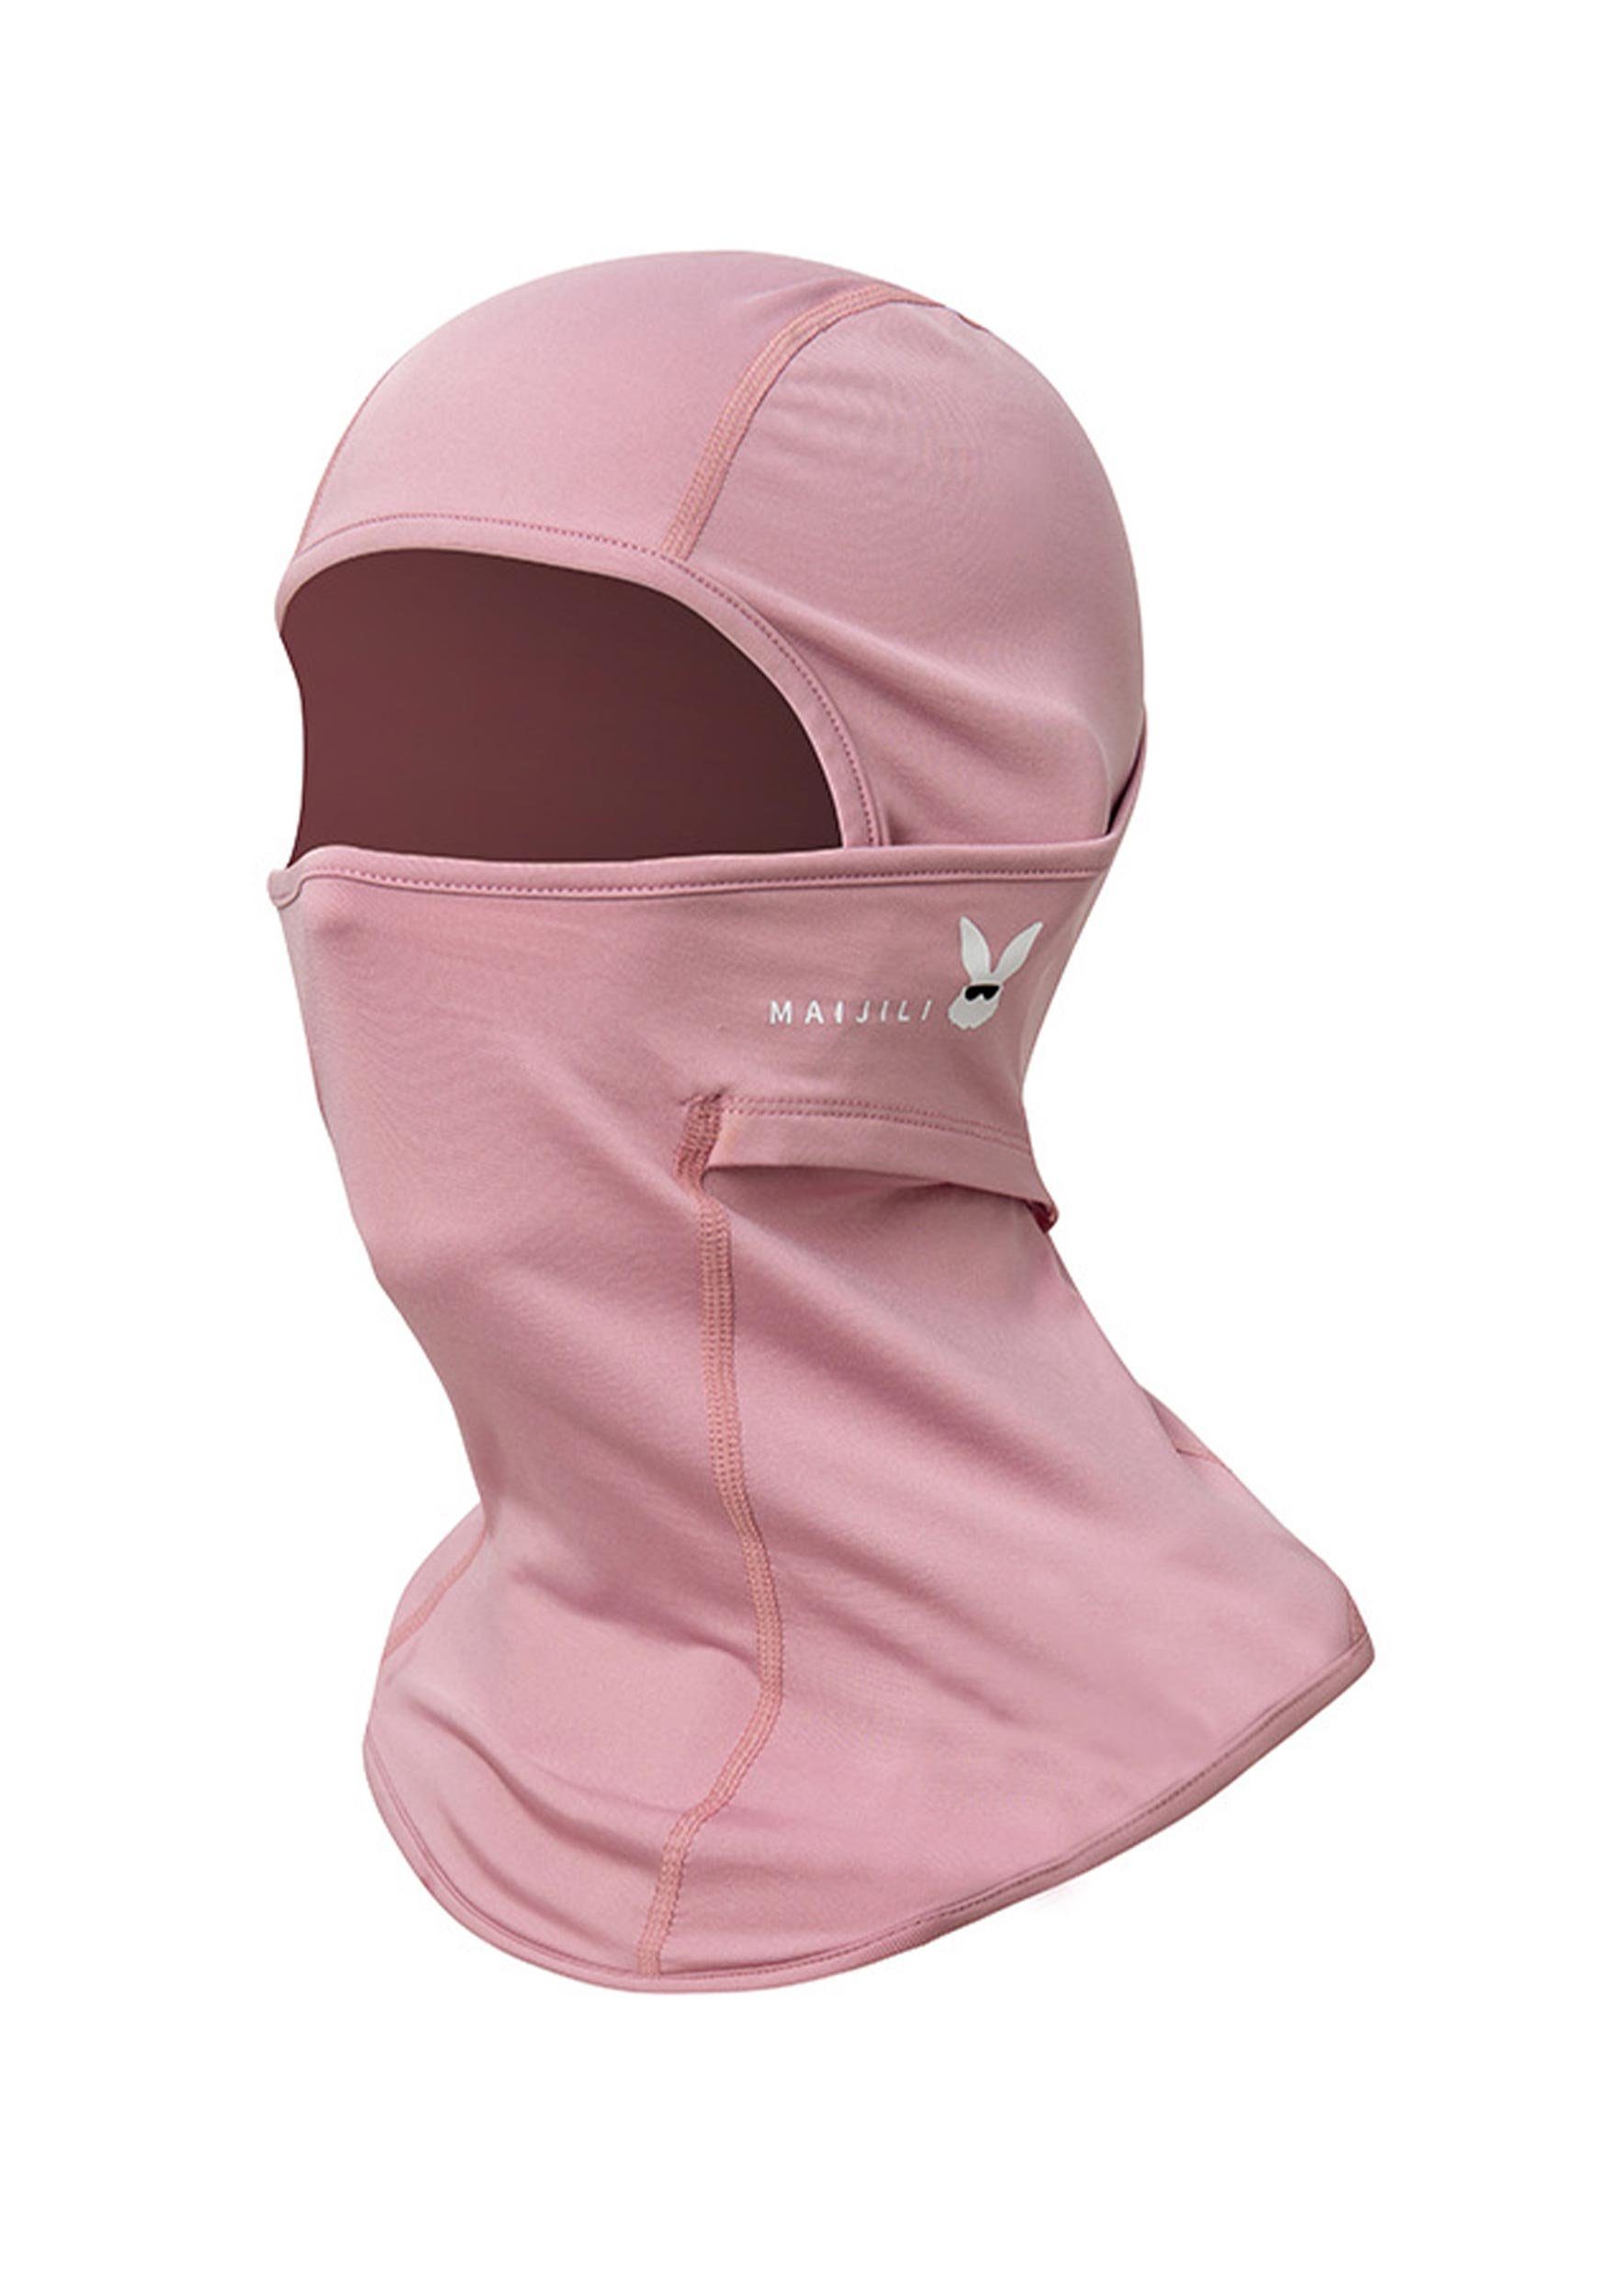 MAGICSHE Sturmhaube Skimaske für Umfassenden Schutz Widersteht UV-Strahlen Rosa